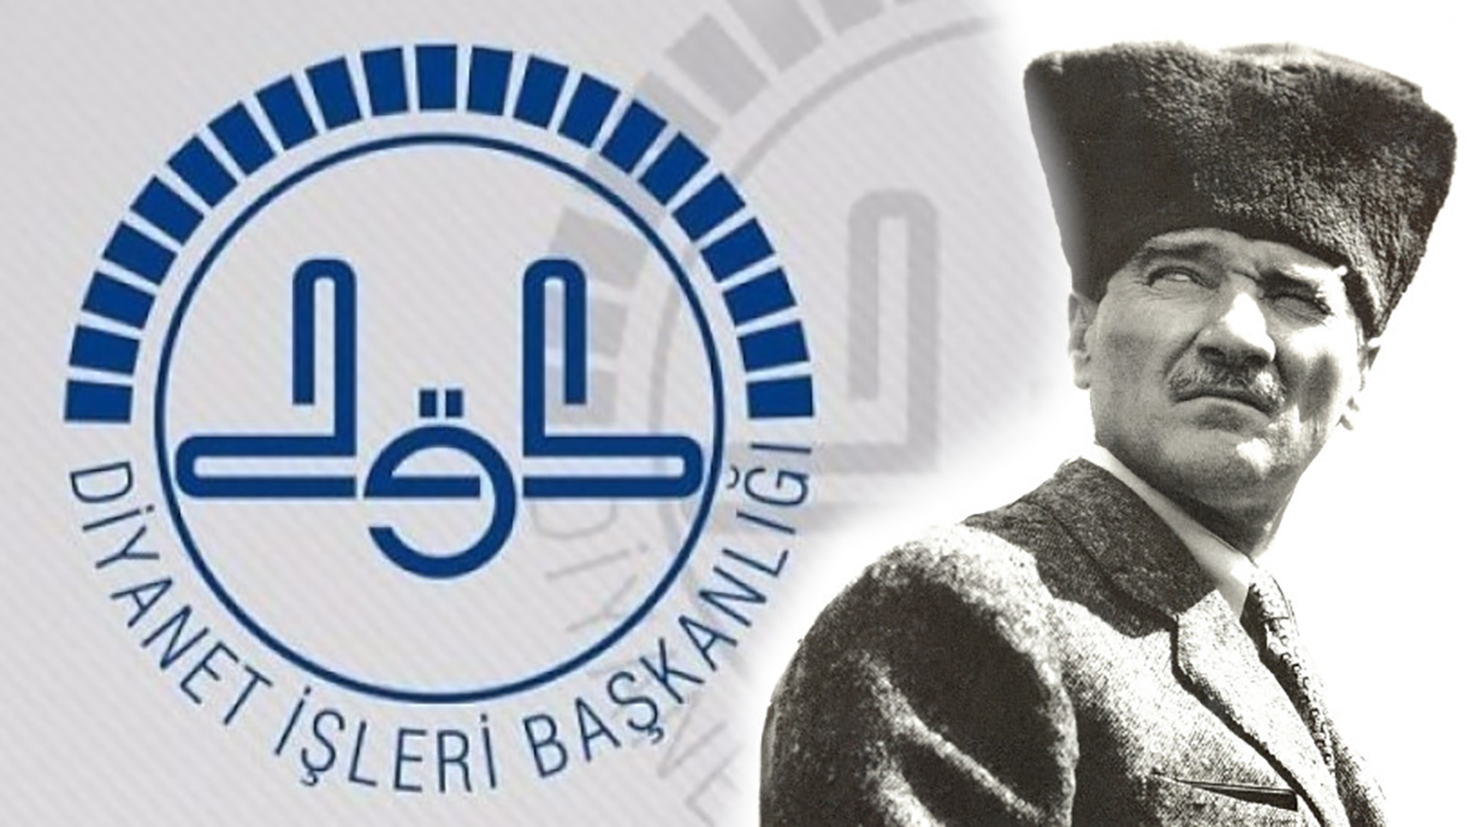 Cuma Hutbesi'nde Atatürk'e yer vermeyen Diyanet, mesaj yayımladı